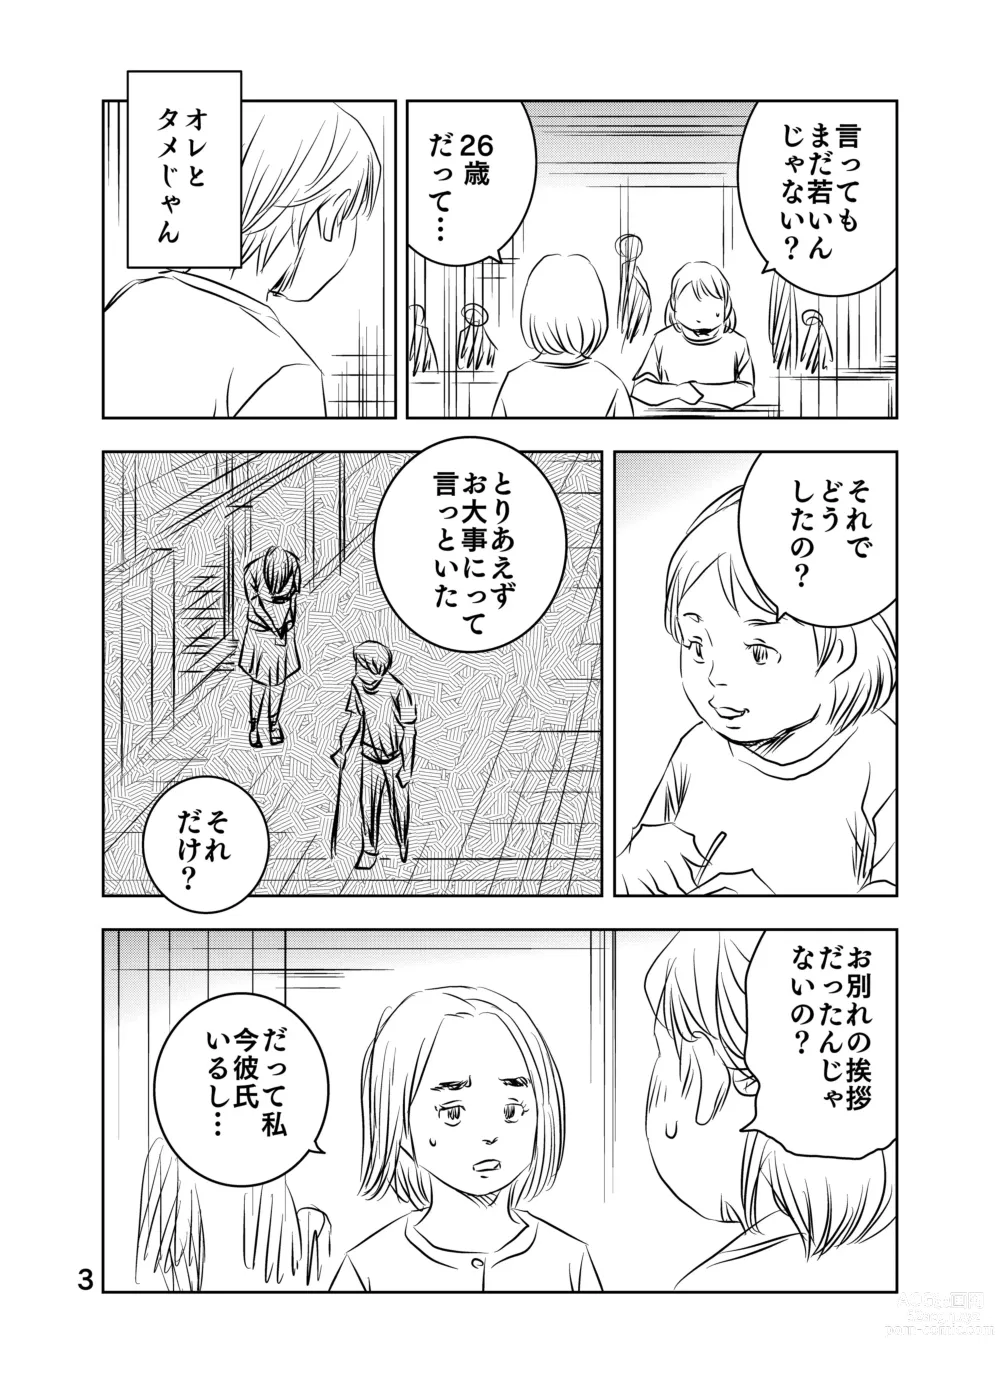 Page 4 of doujinshi Zurui Hito-tachi 2